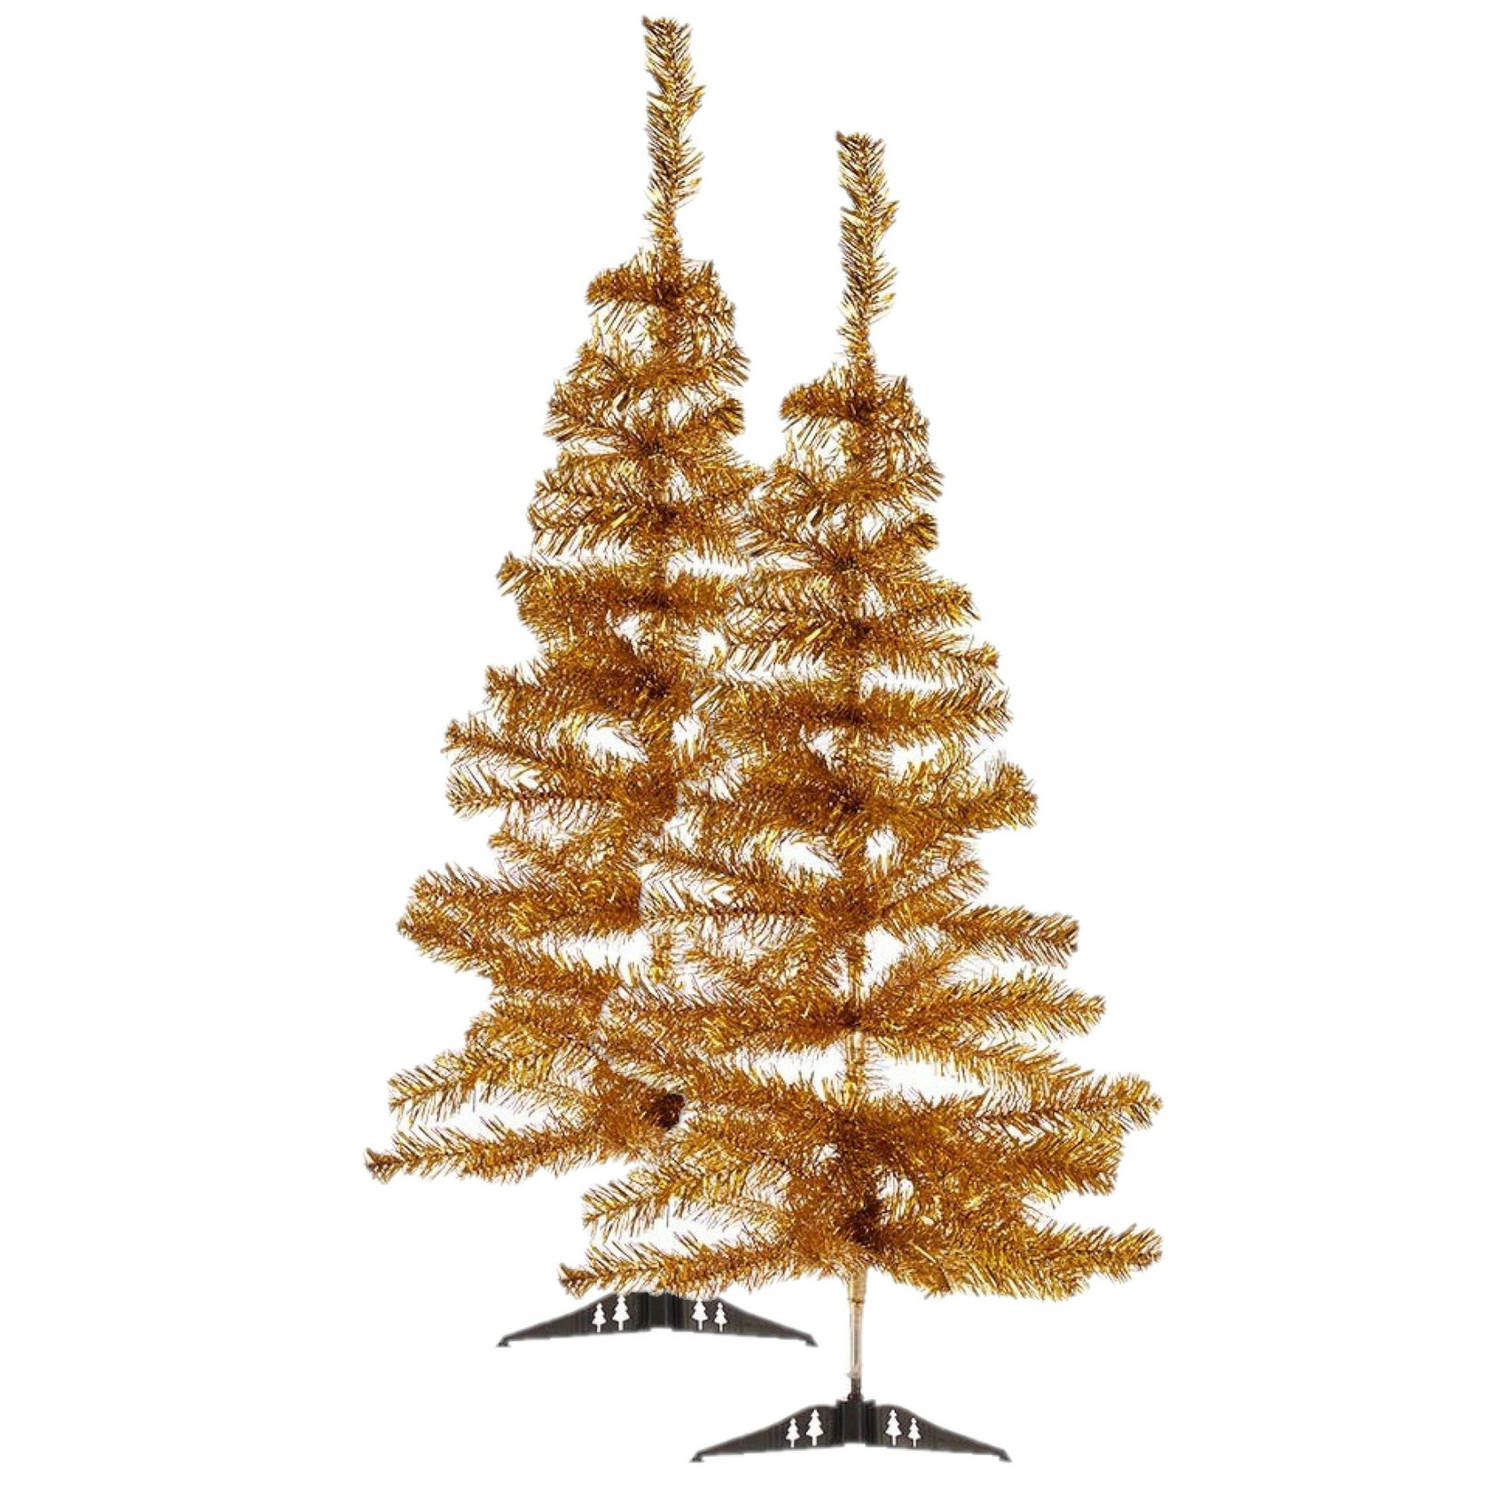 2x stuks kleine gouden kerstbomen van 90 cm - Kunstkerstboom